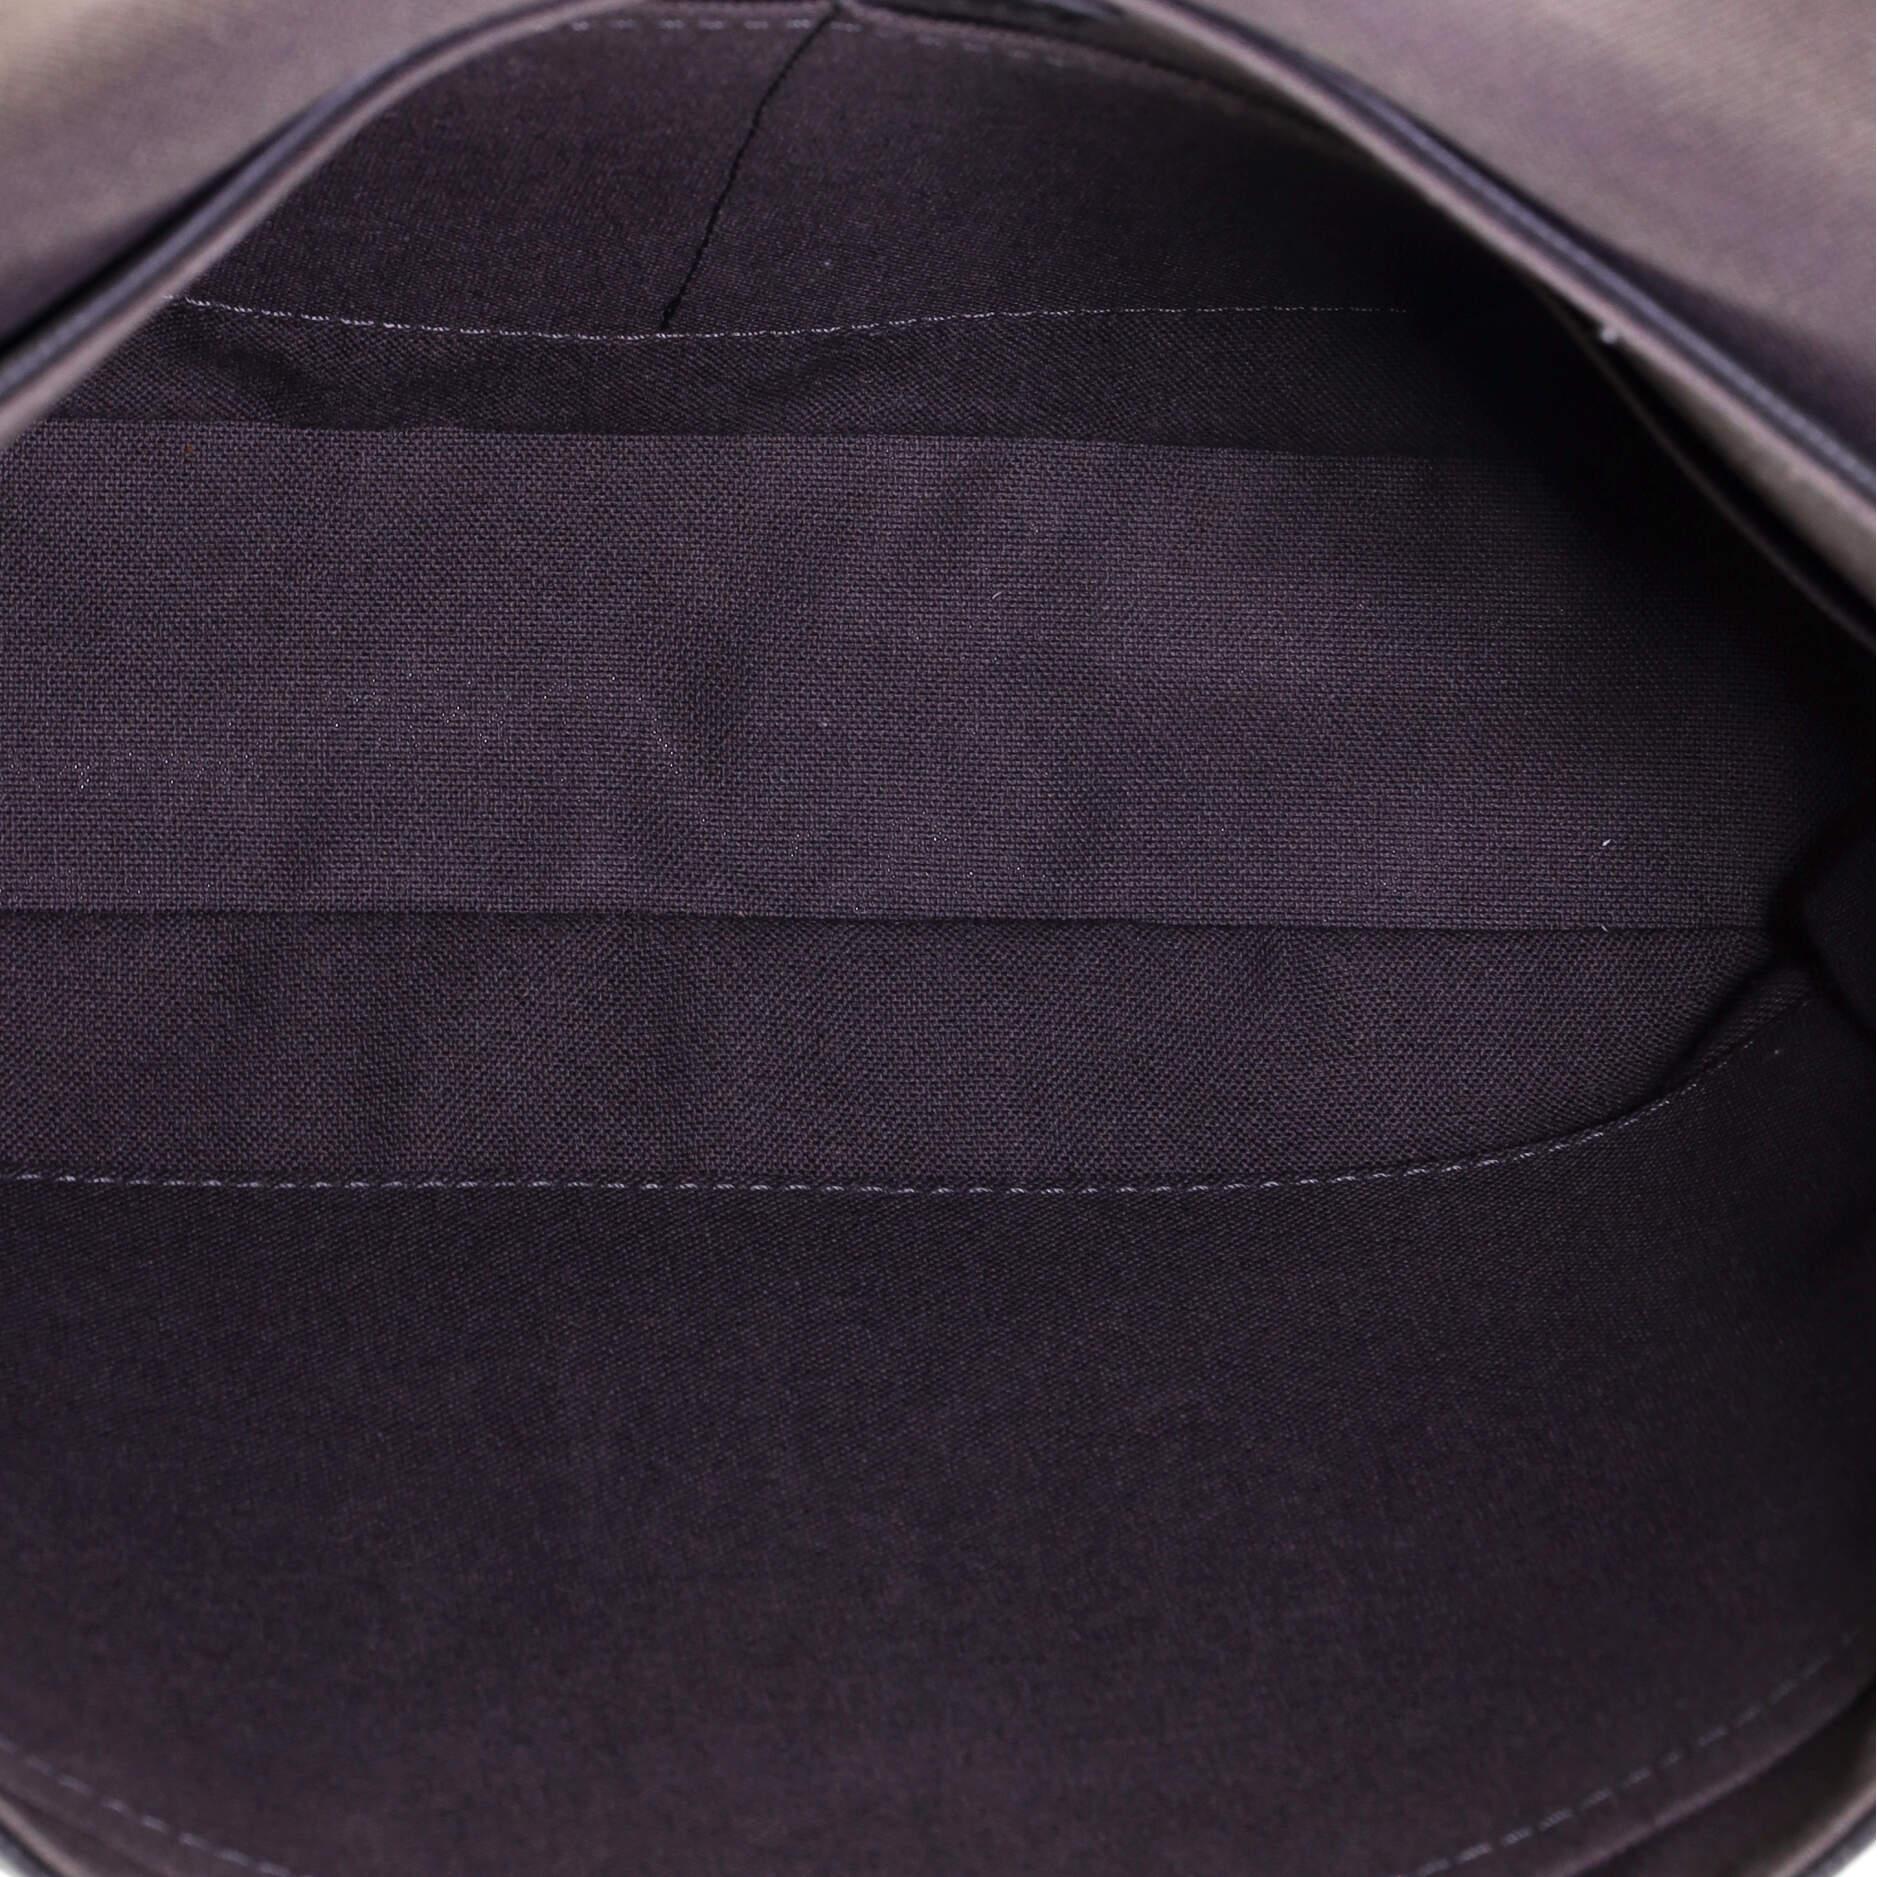 Black Louis Vuitton District Messenger Bag Damier Infini Leather PM